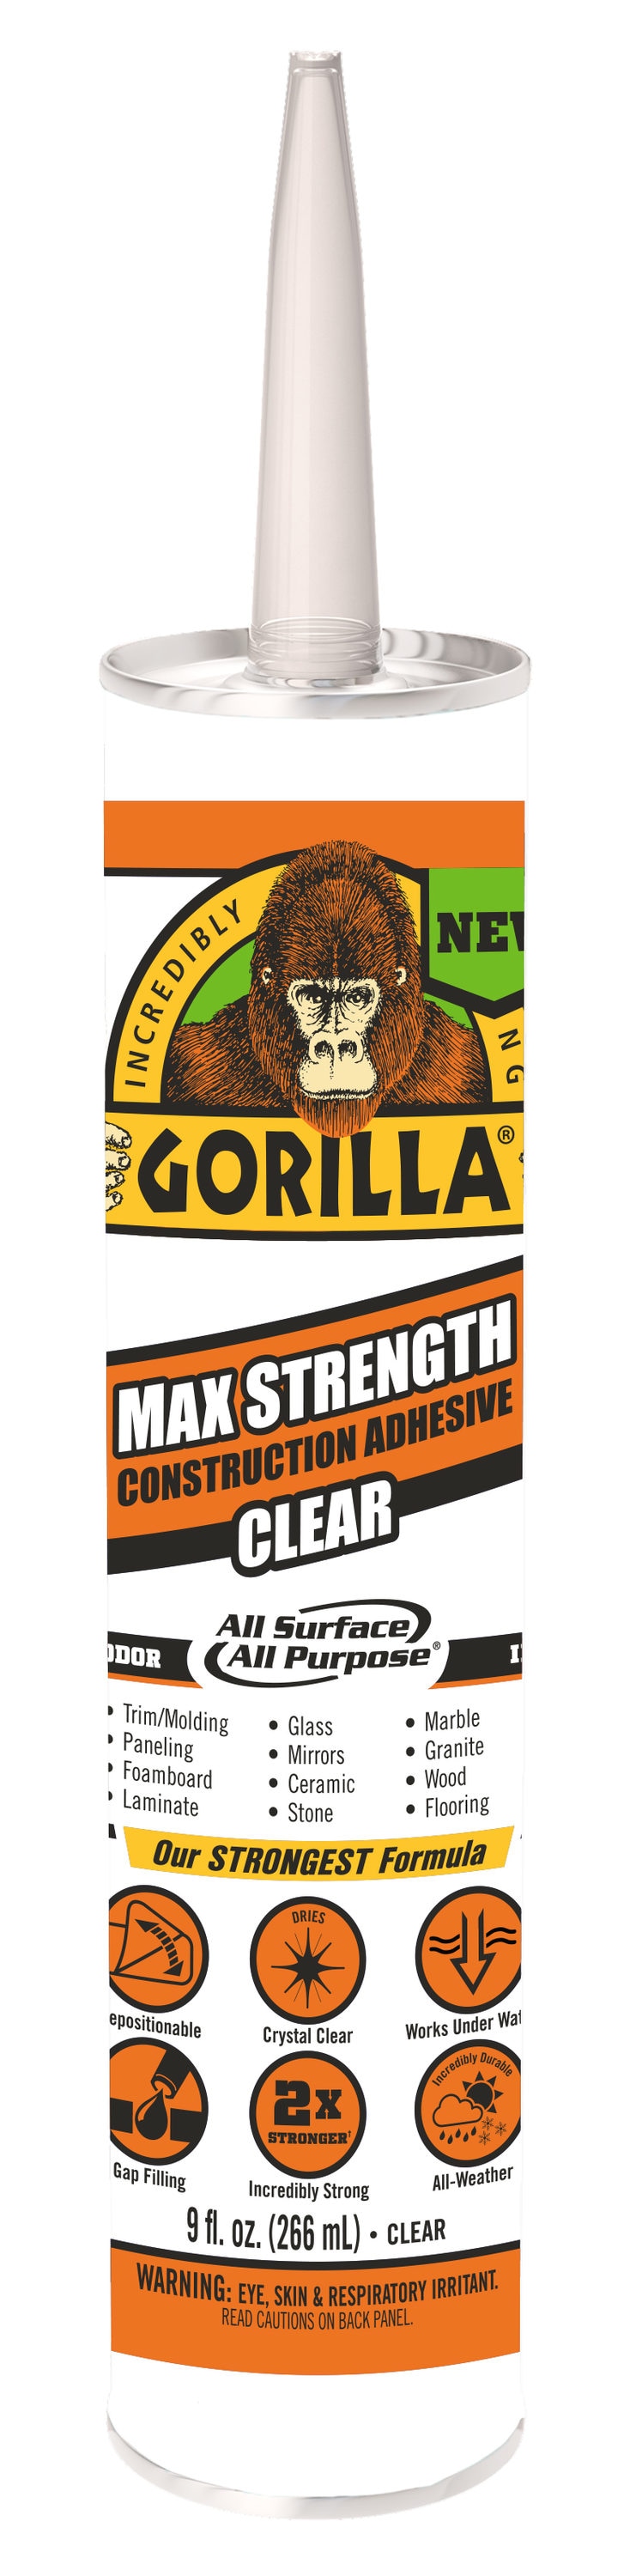 The Gorilla Glue Company - Our new Gorilla All Purpose Epoxy Stick